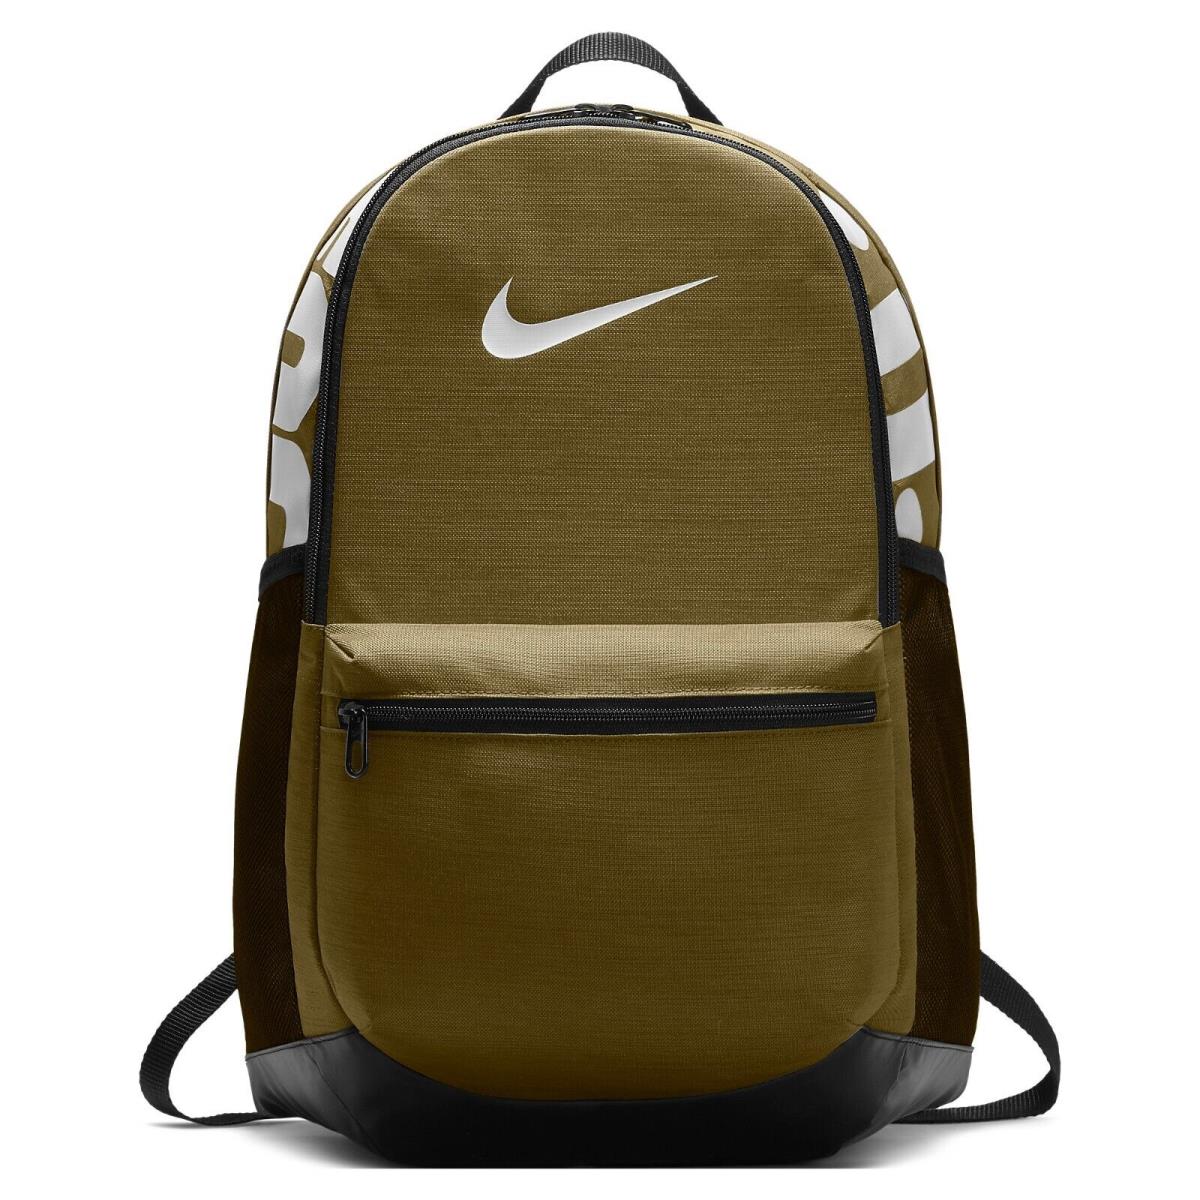 Nike Brasilia Medium Training Backpack BA5329-399 Olive/black/white 1465 CU